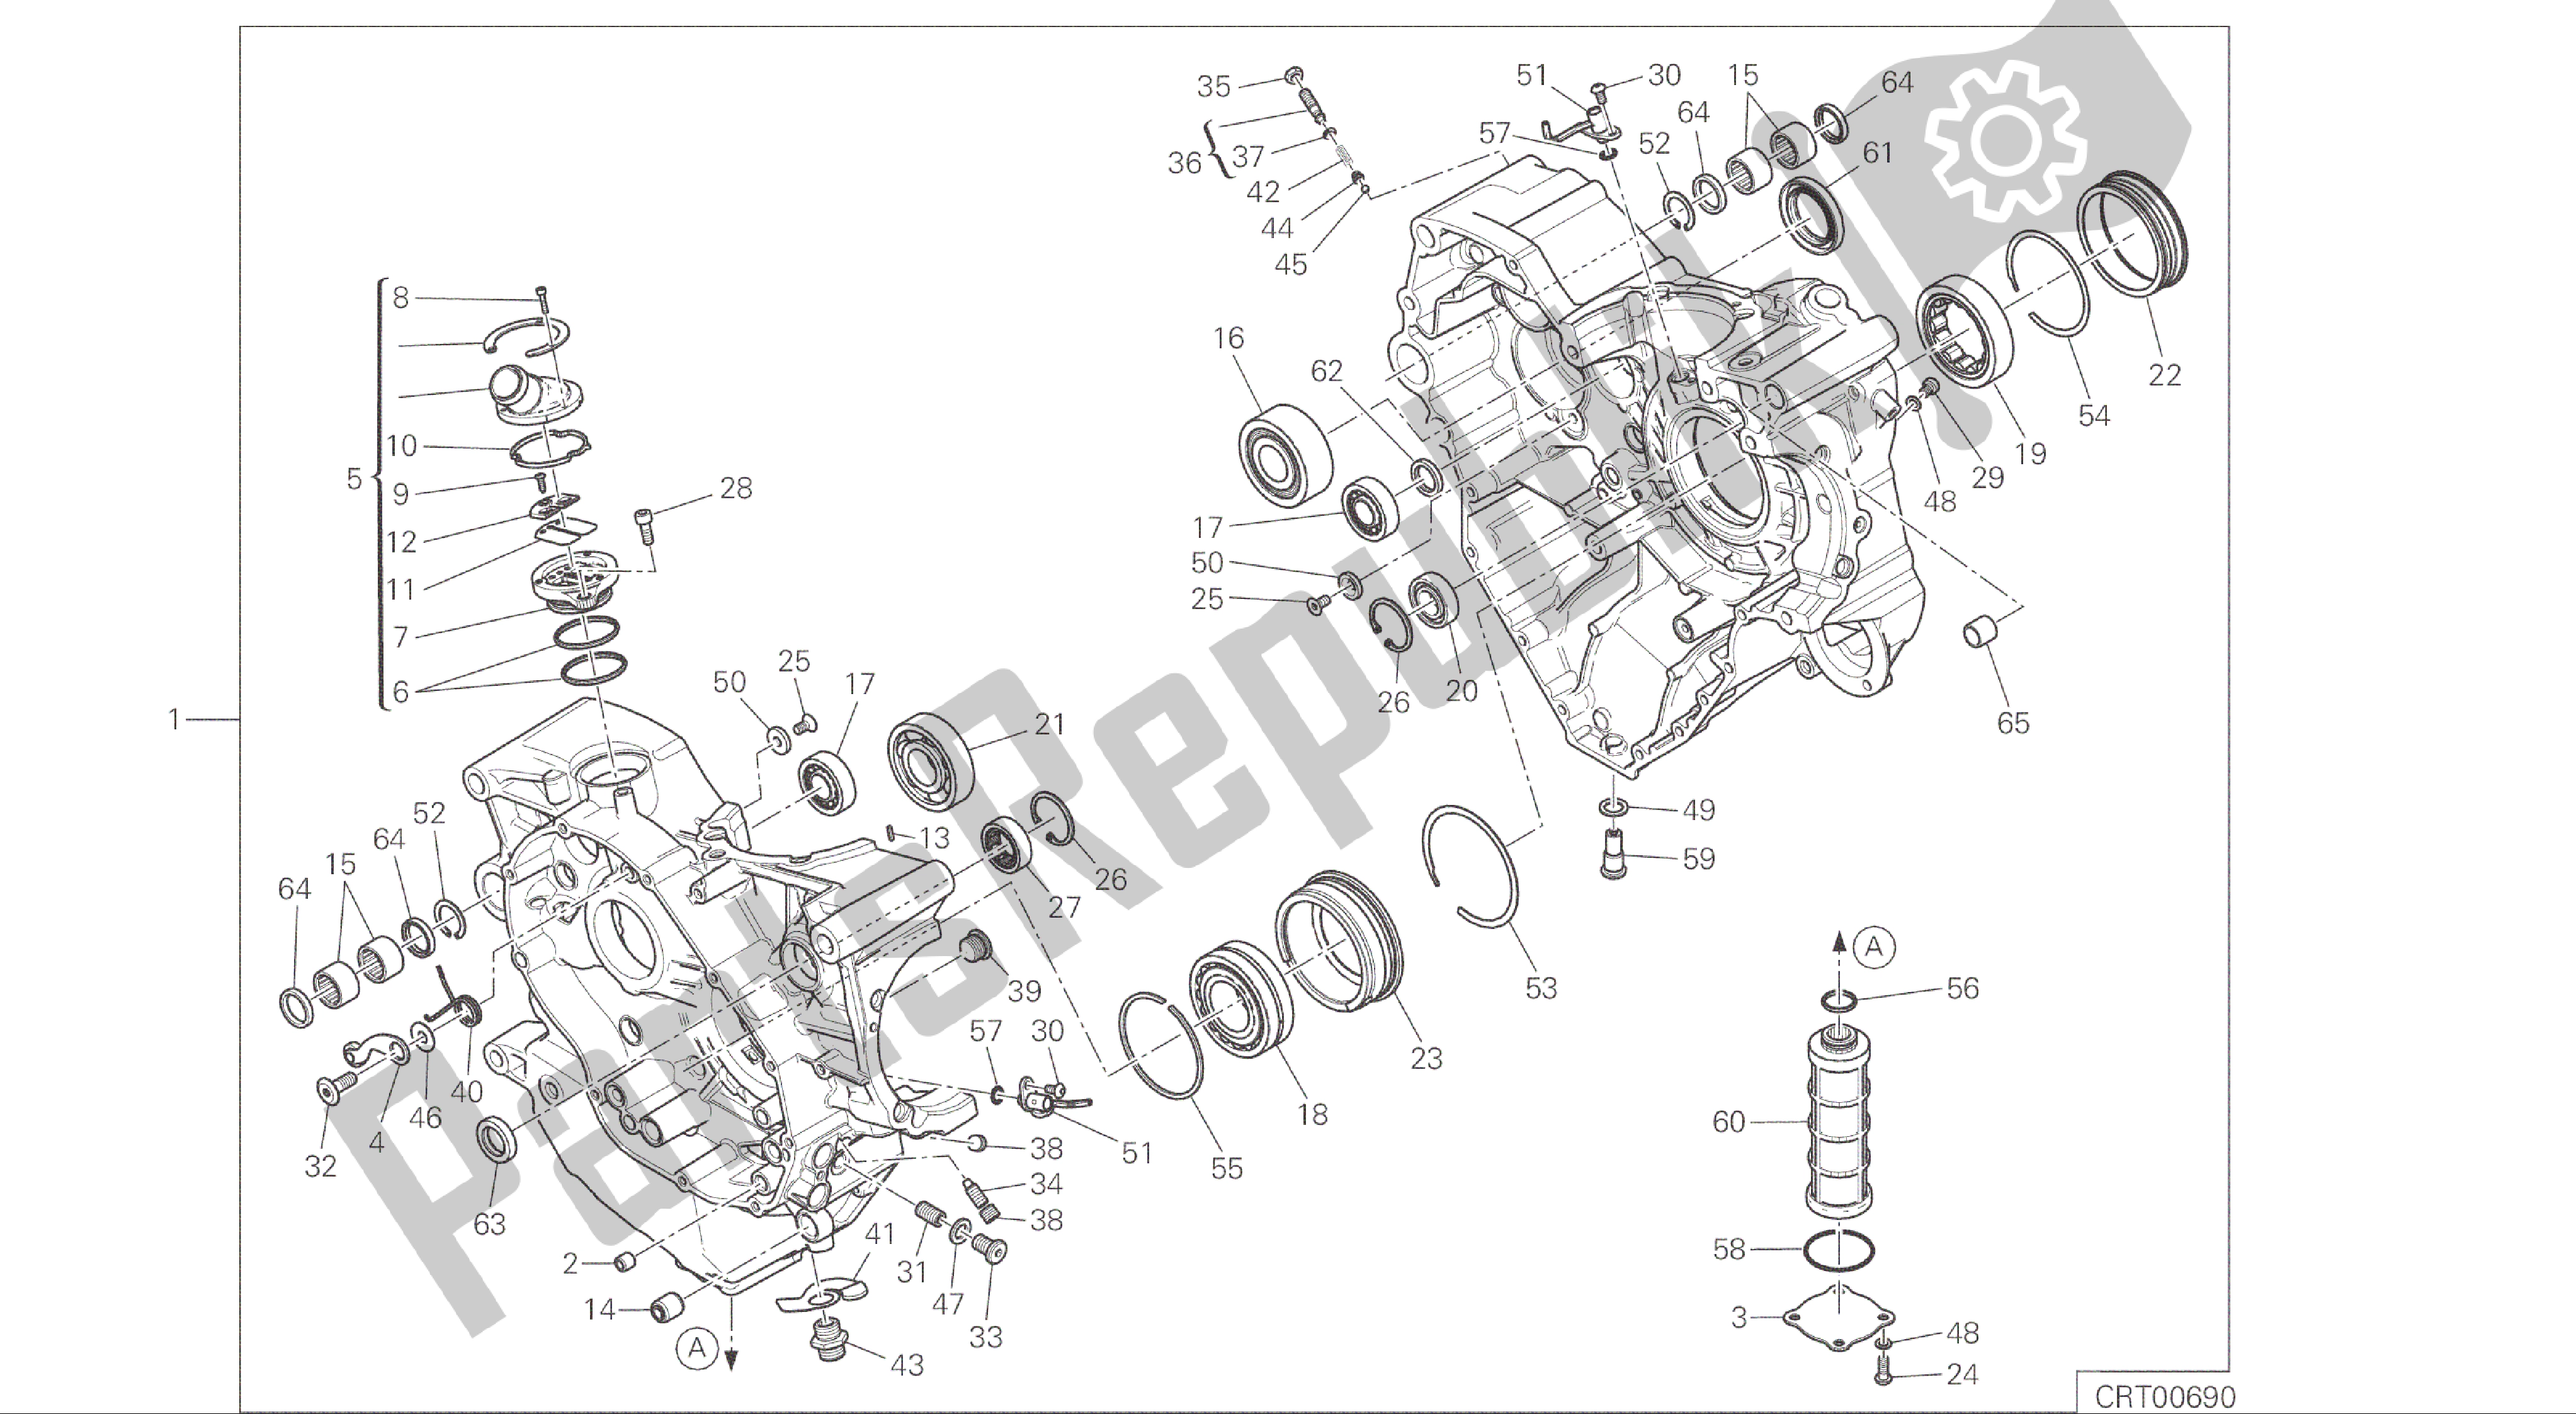 Alle onderdelen voor de Tekening 010 - Halve Carters Paar [mod: Ms1200; Xst: Aus, Eur, Fra, Jap] Groep Engine van de Ducati Multistrada 1200 2015